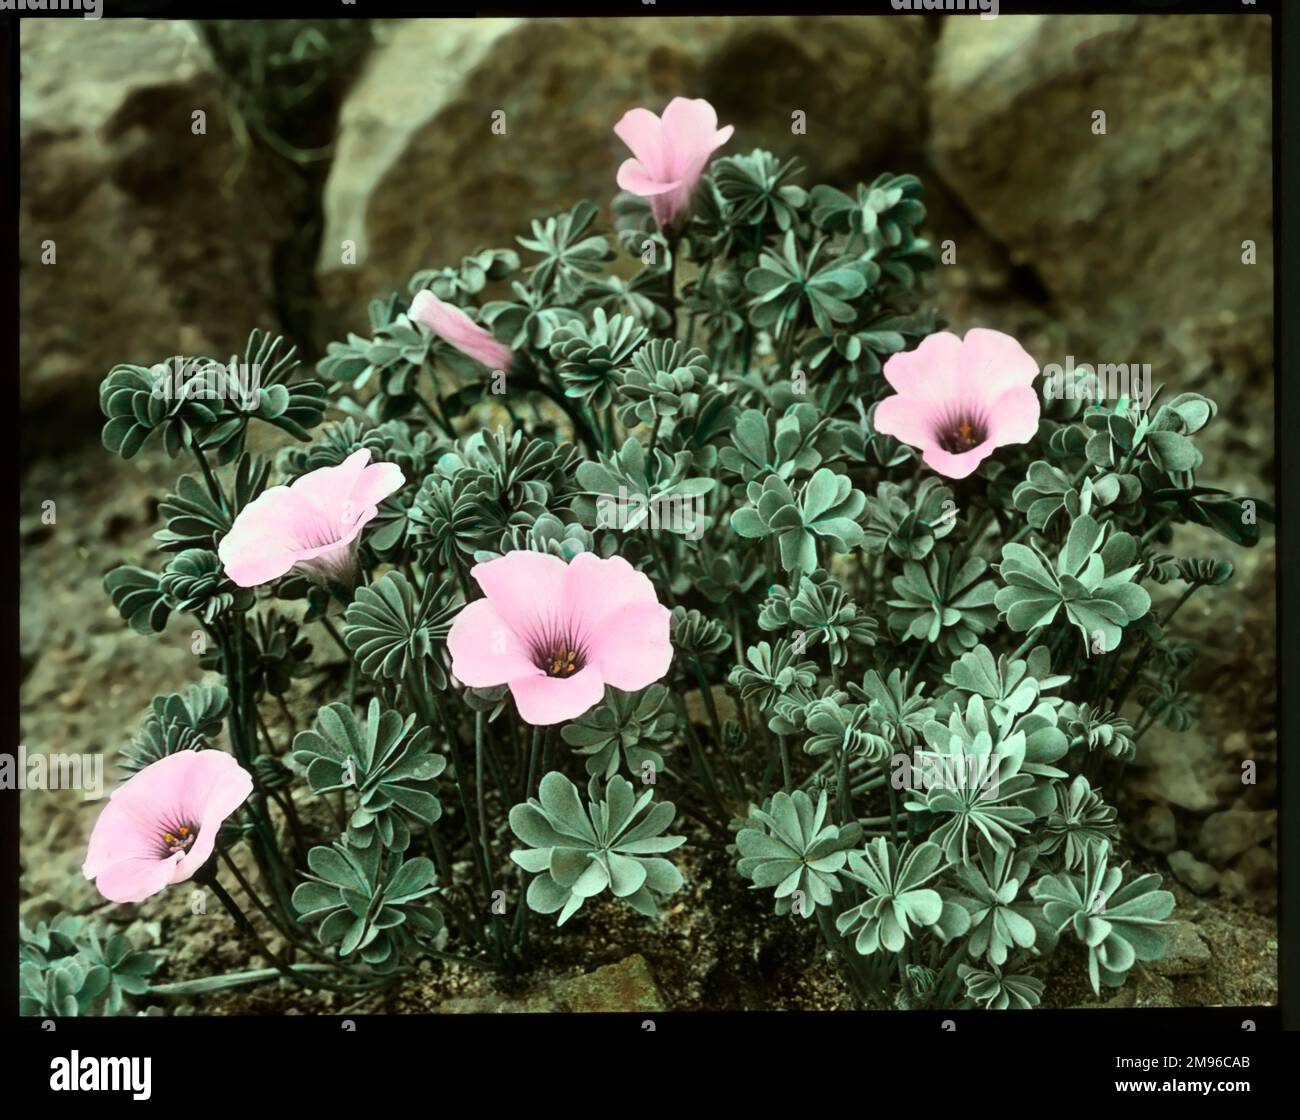 Oxalis crassipes rosea (Strawberry Oxalis, Wood Sorrel), plante à fleurs vivaces de la famille des Oxalidaceae, avec des fleurs roses. Vu ici en pleine croissance dans un cadre rocailleux. Banque D'Images